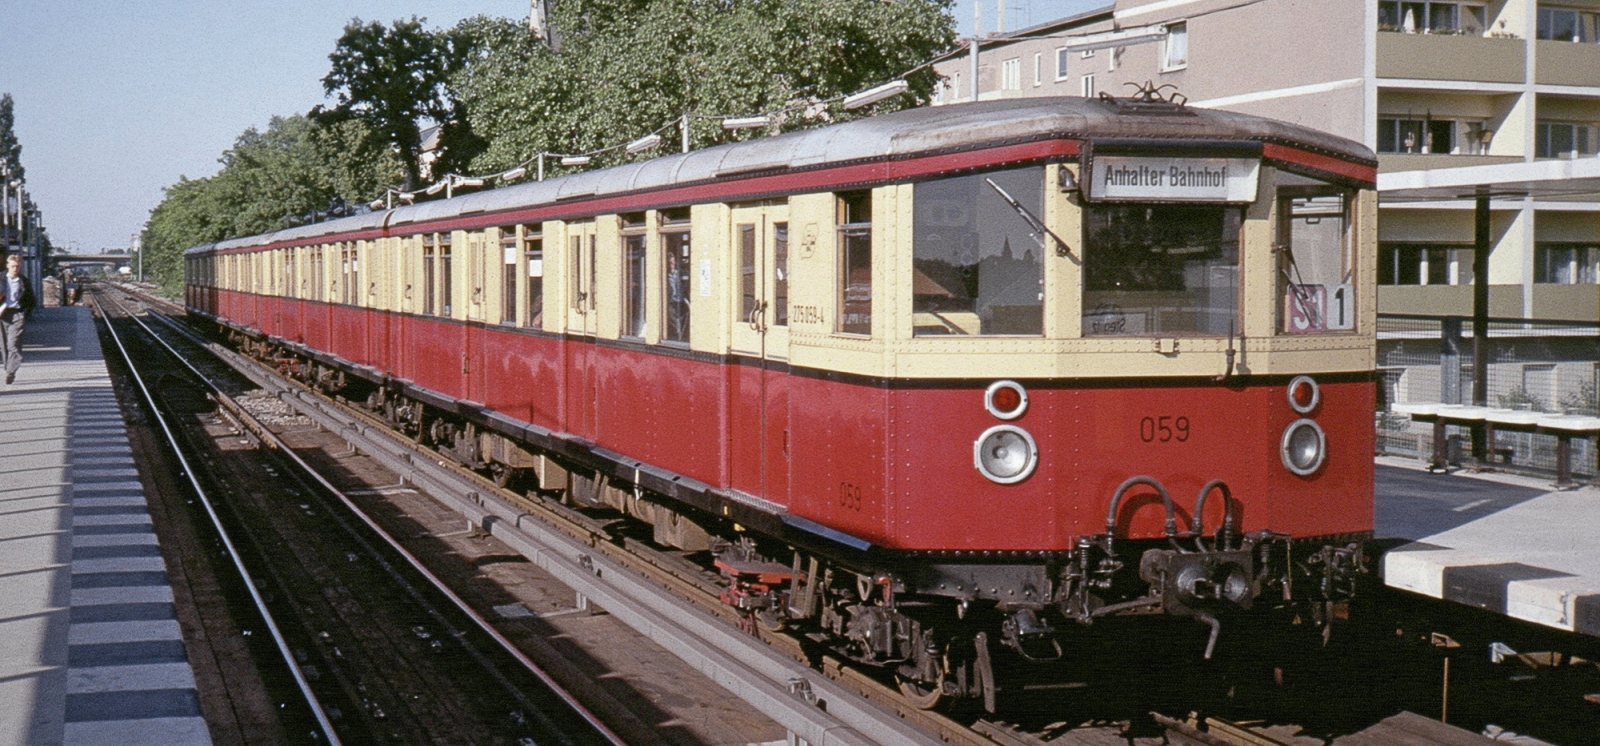 One of the West Berlin trains in June 1989 in Berlin-Steglitz